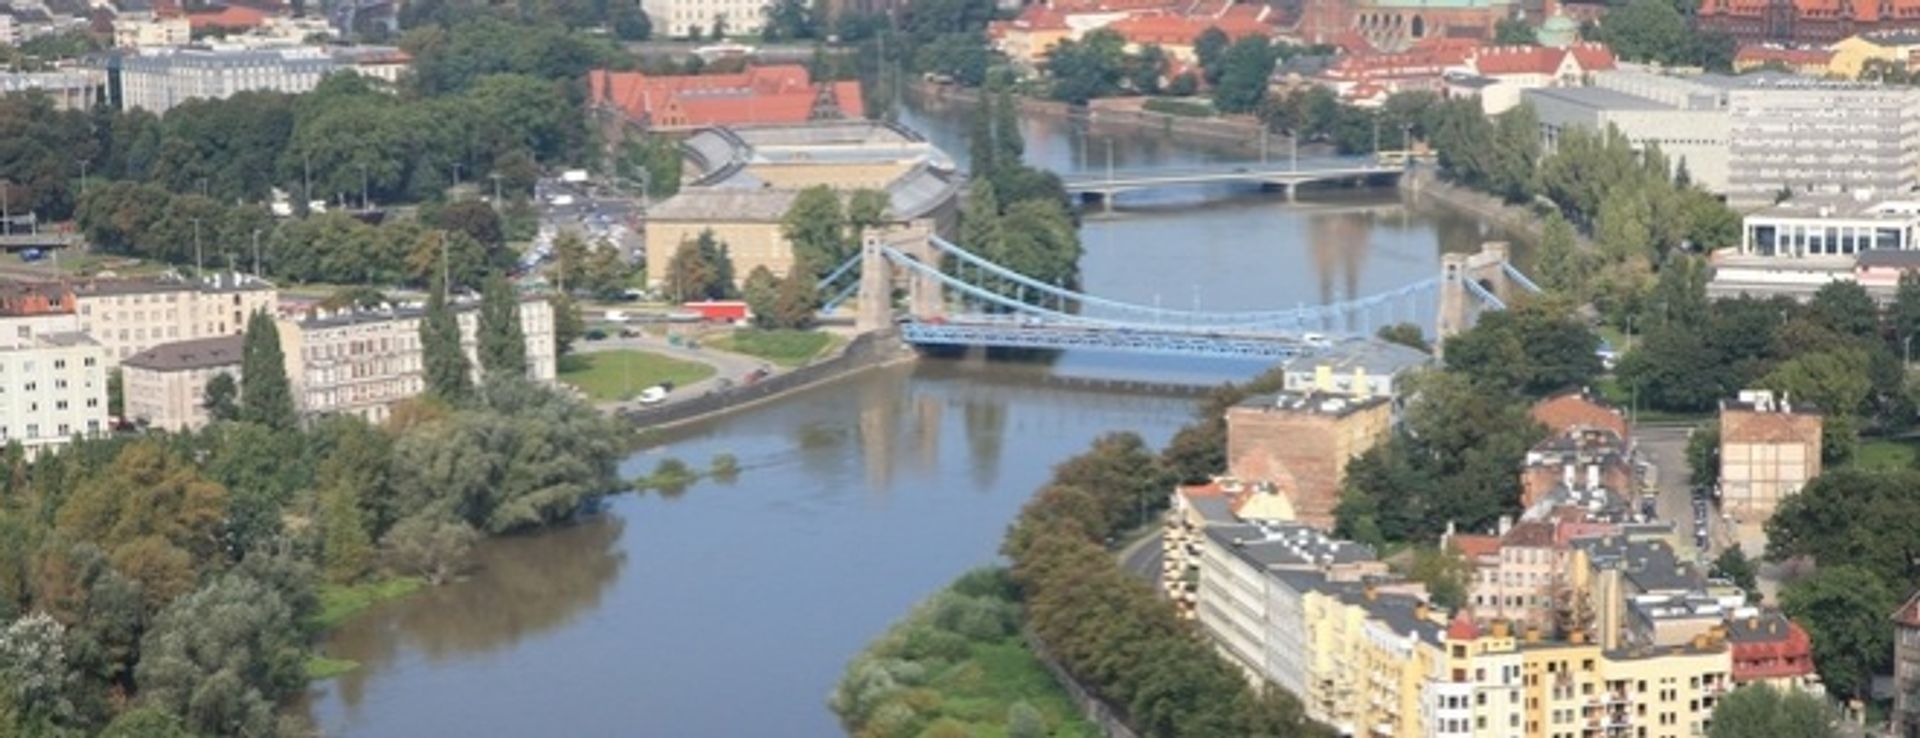  300 milionów złotych na wzmocnienie mostów i nabrzeży Odry we Wrocławiu